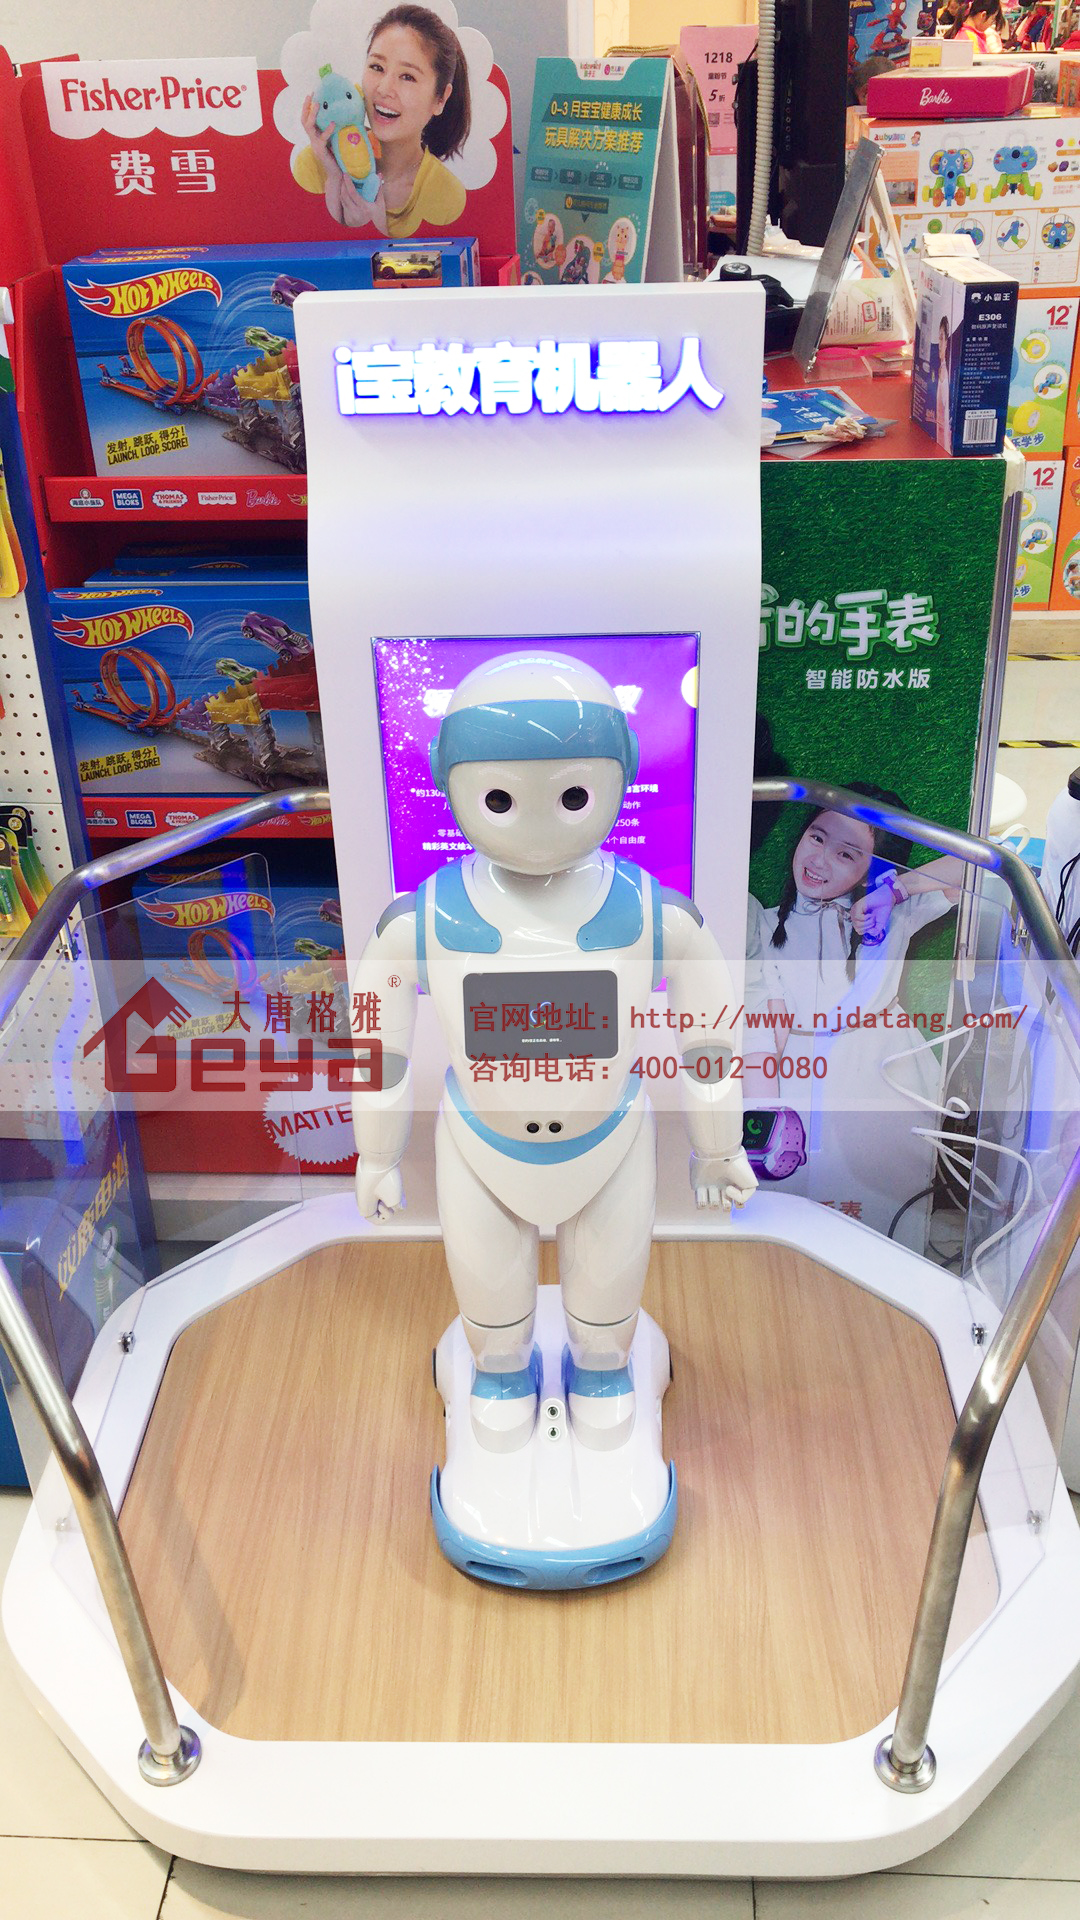 机器人展台,机器人展示台,机器人展会,机器人展览,南京展台搭建